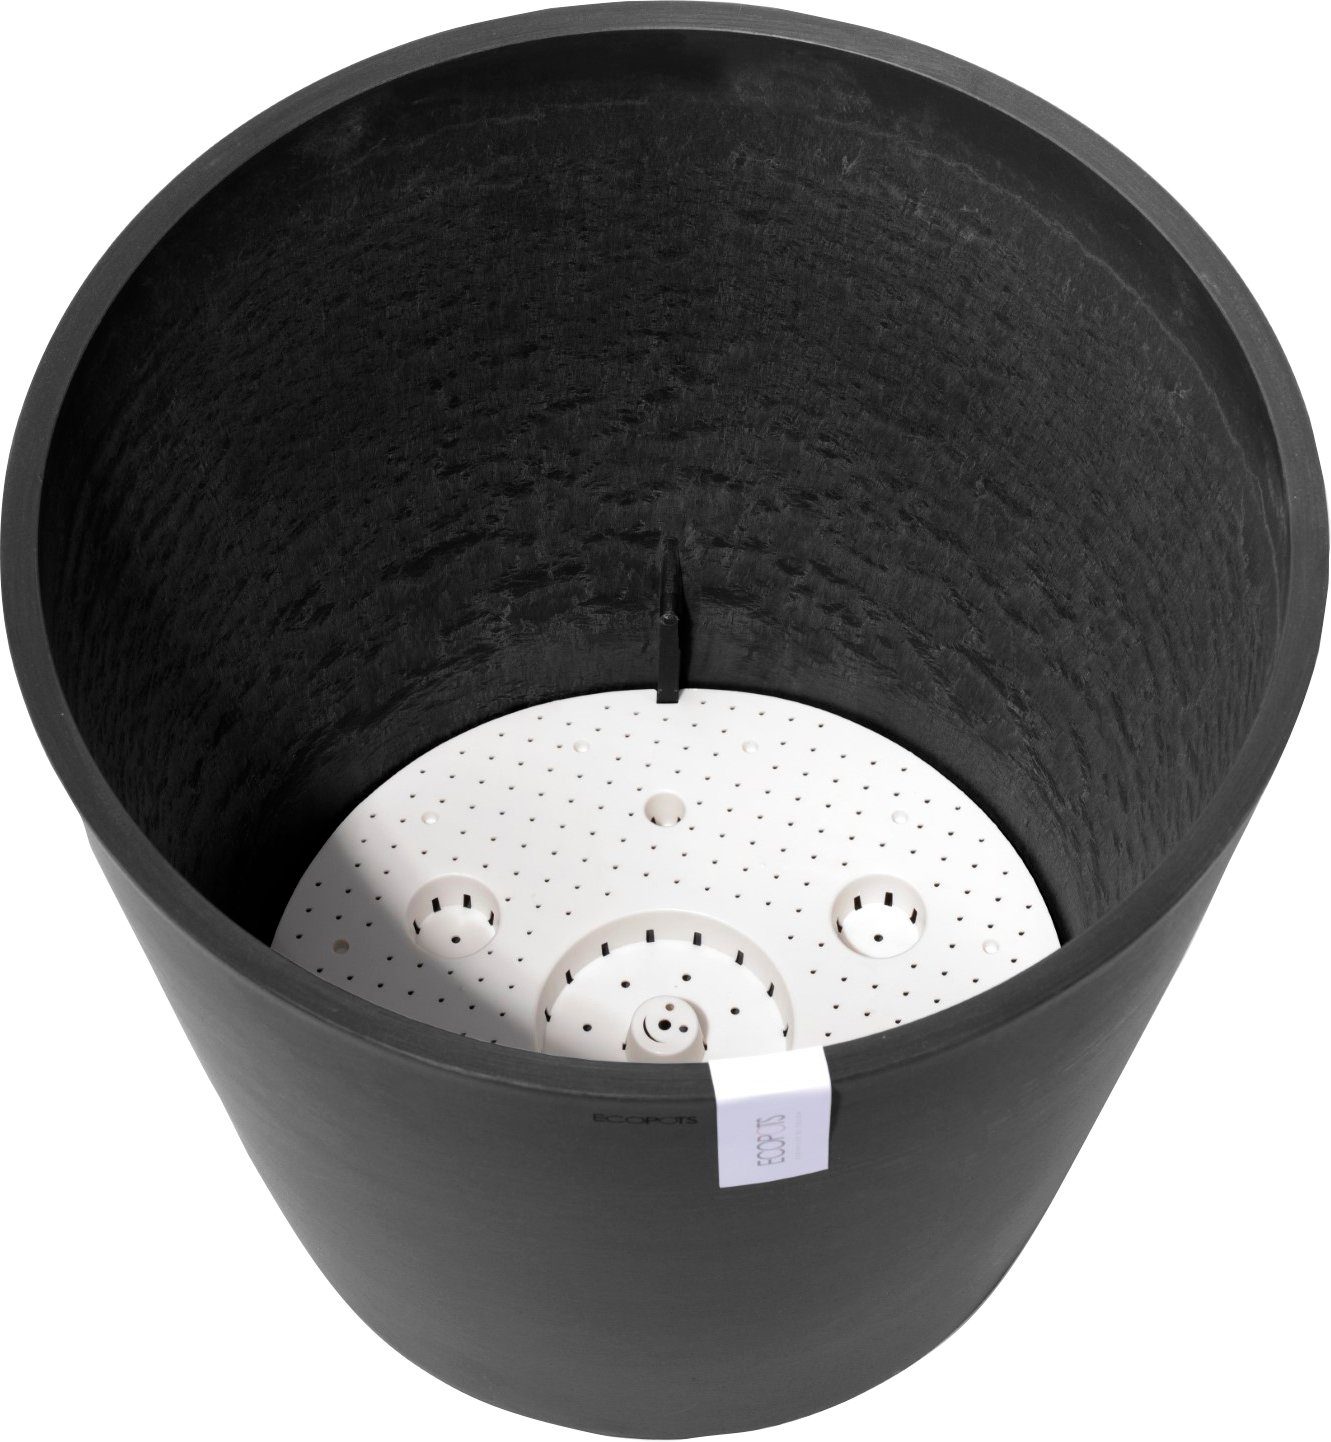 ECOPOTS Blumentopf Wasserreservoir AMSTERDAM cm, mit Grey, Dark 50x50x43,8 BxTxH: